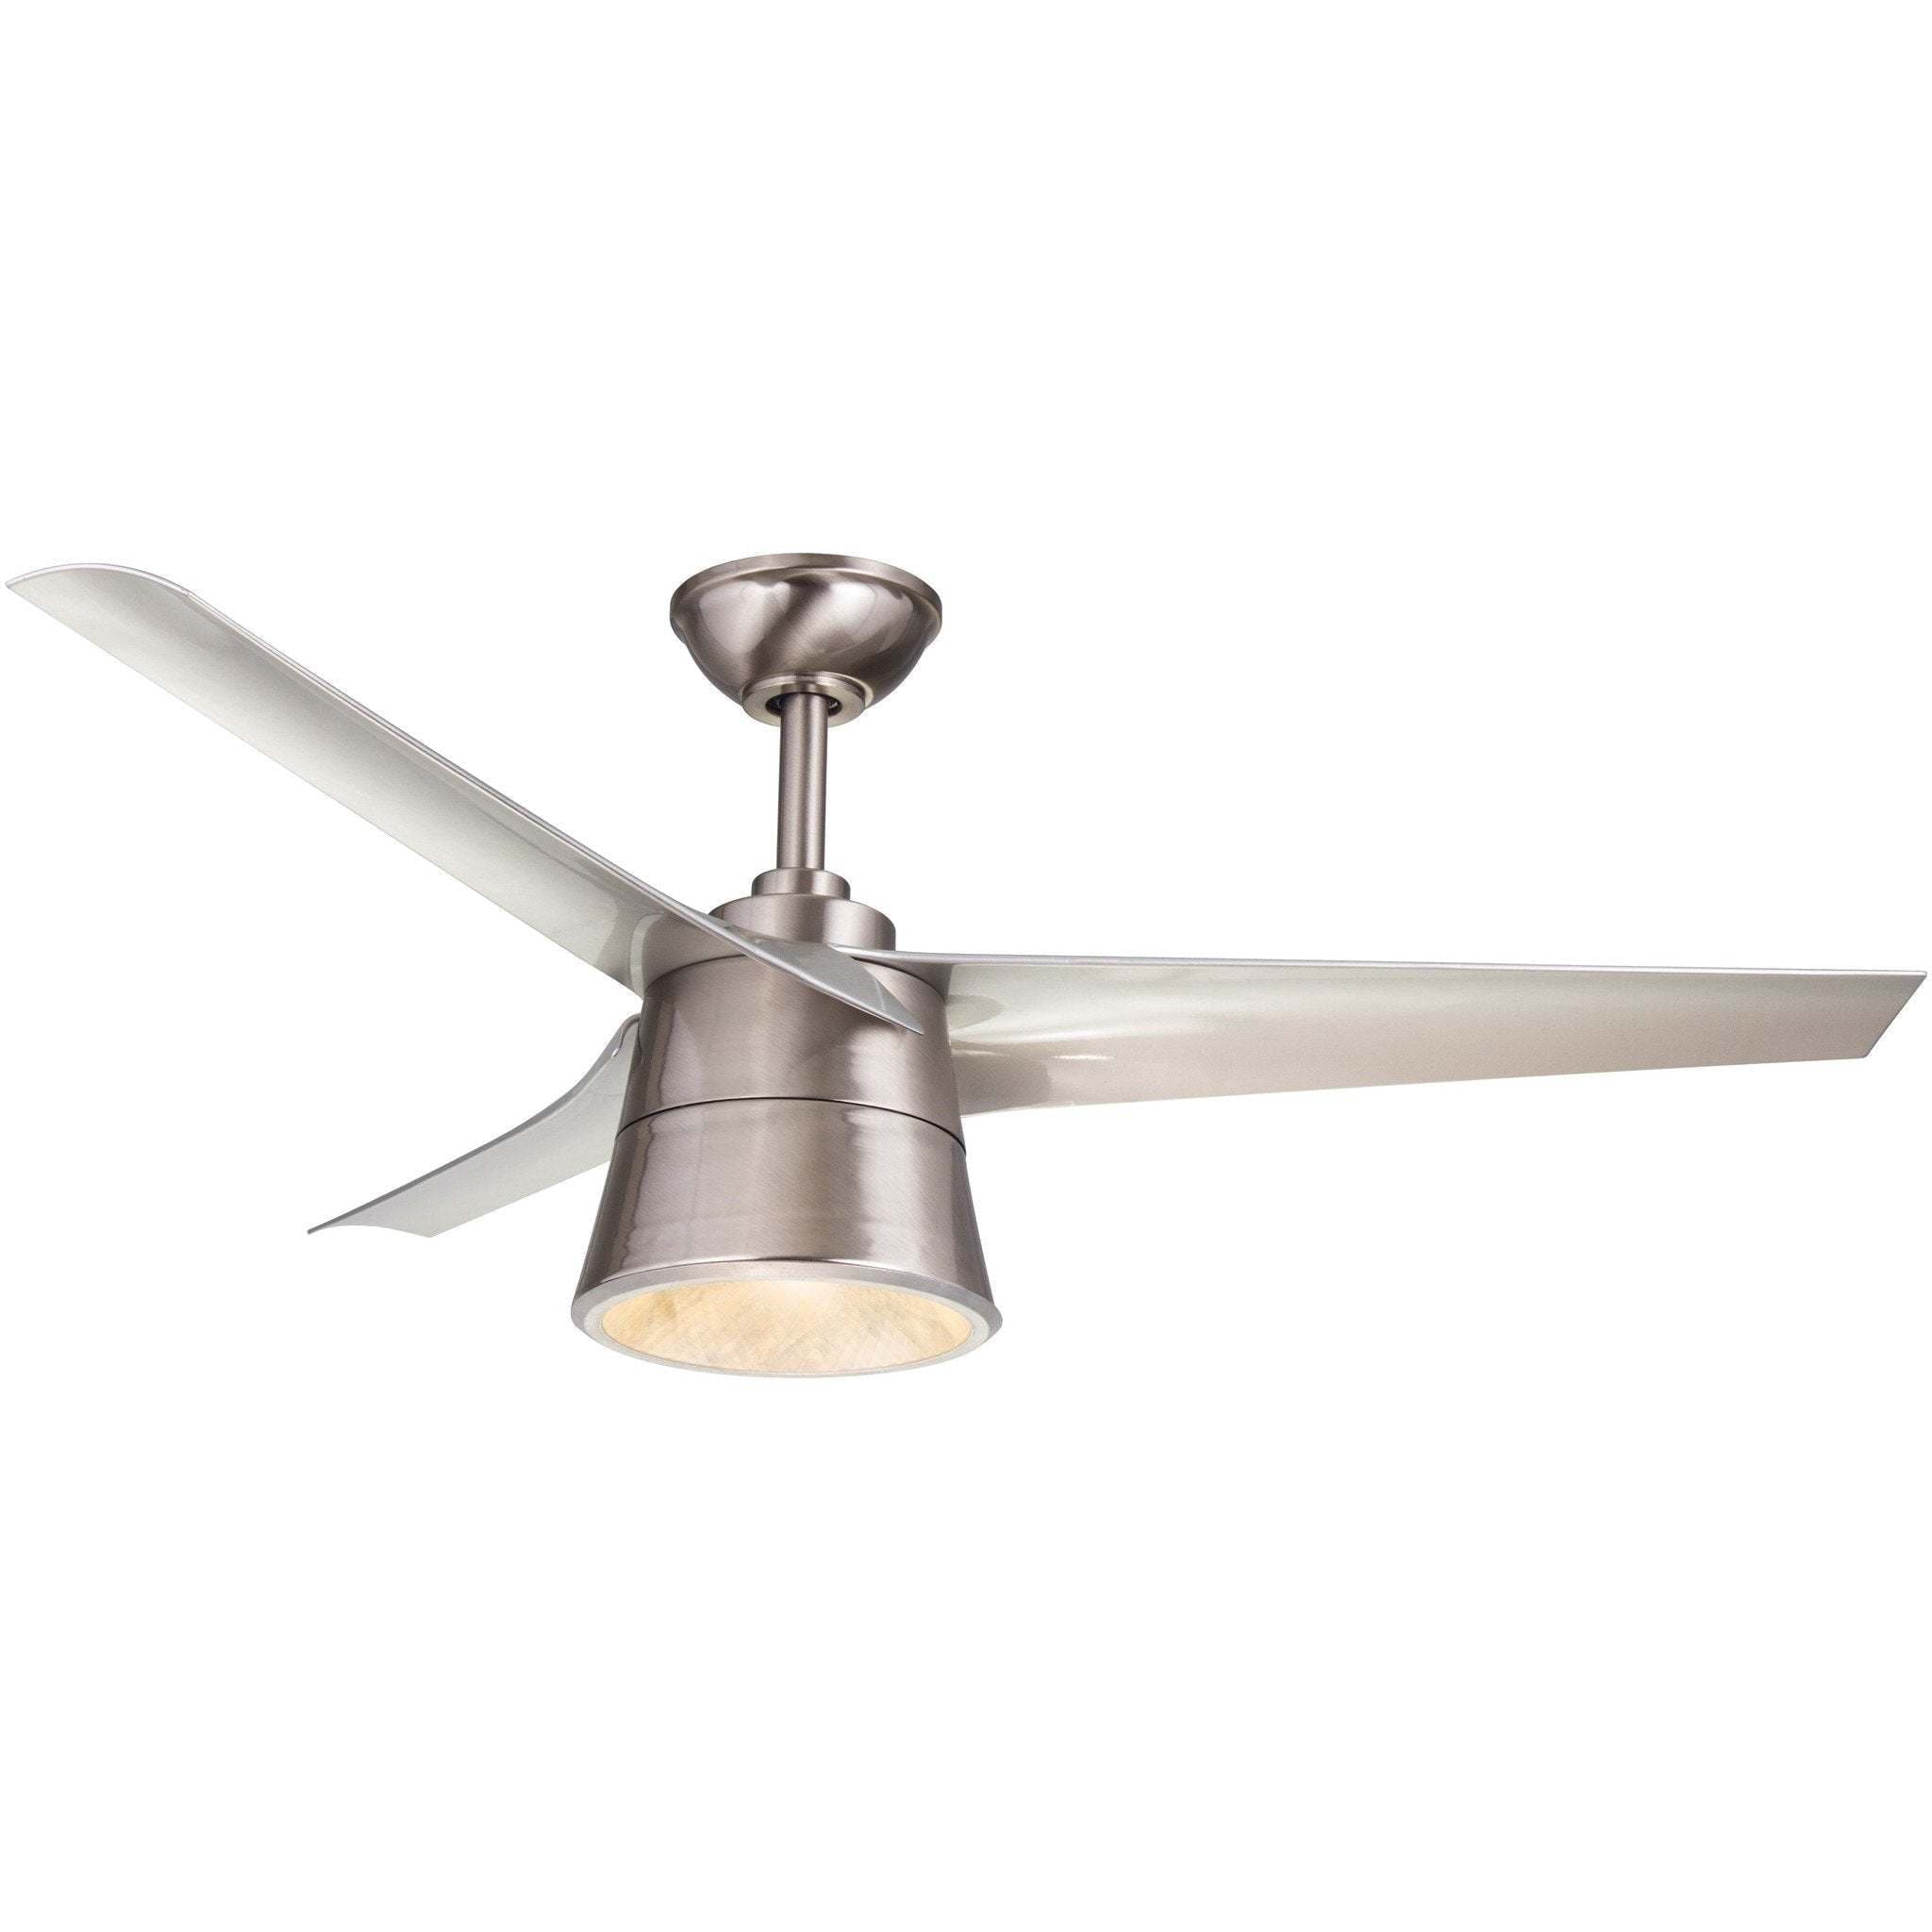 Wind River Cylon Ceiling Fan - Image 1